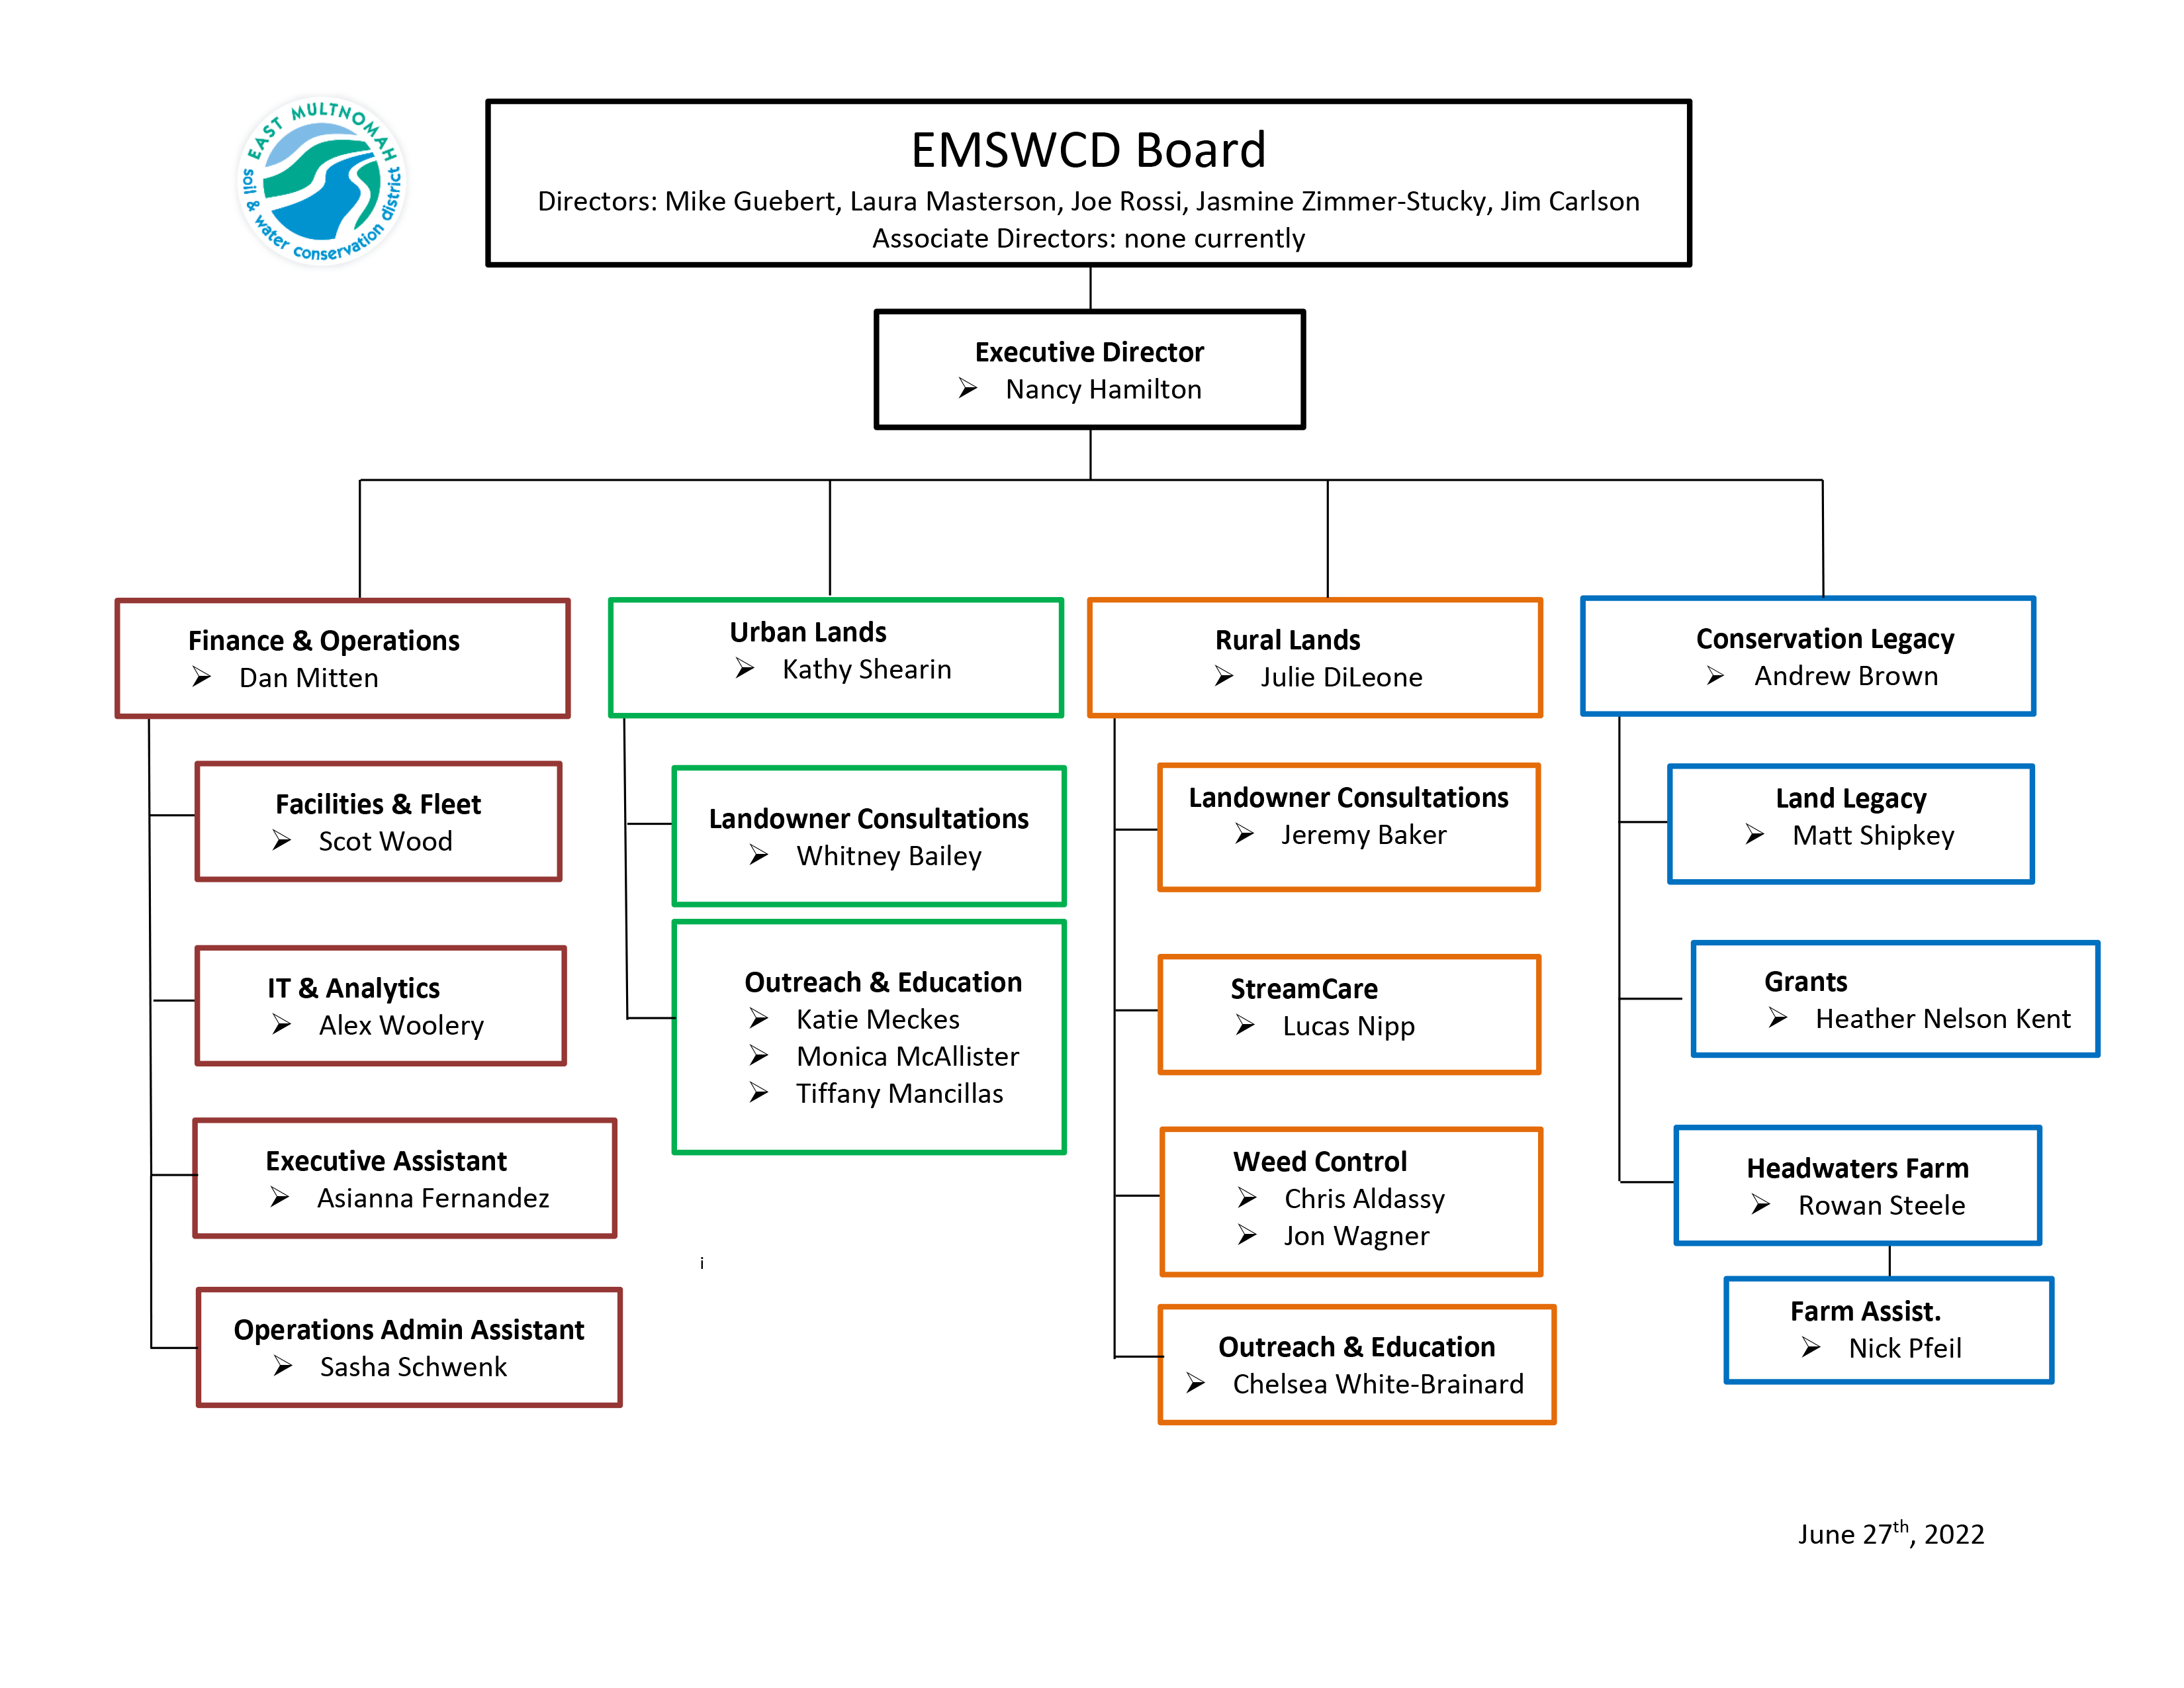 يُظهر المخطط التنظيمي EMSWCD التسلسل الهرمي لمجلس الإدارة والمدير التنفيذي والمشرفين والموظفين - تم تحديثه في 27 يونيو 2022